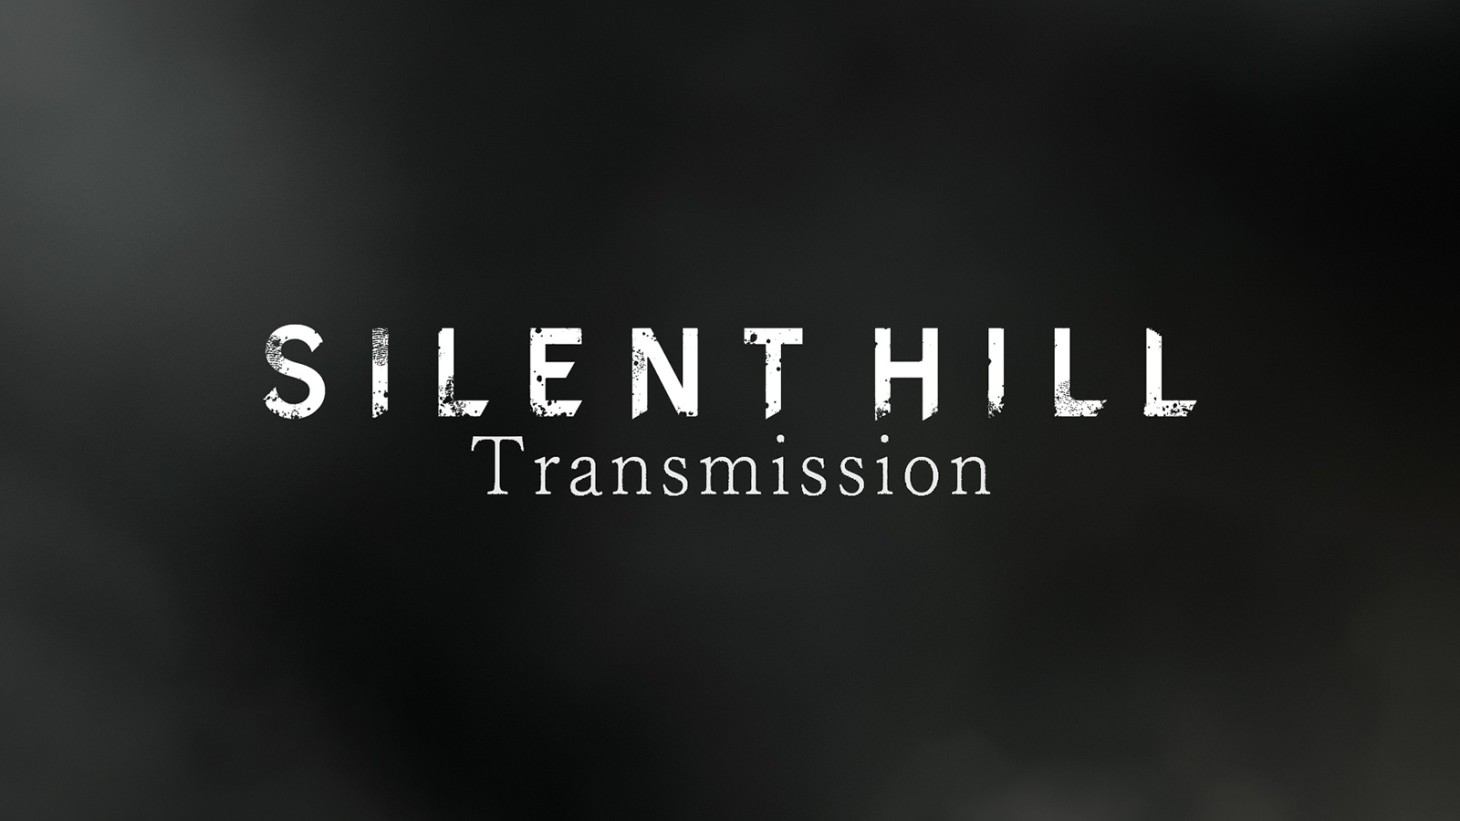 Diese Woche gibt es mehr Neuigkeiten aus Silent Hill